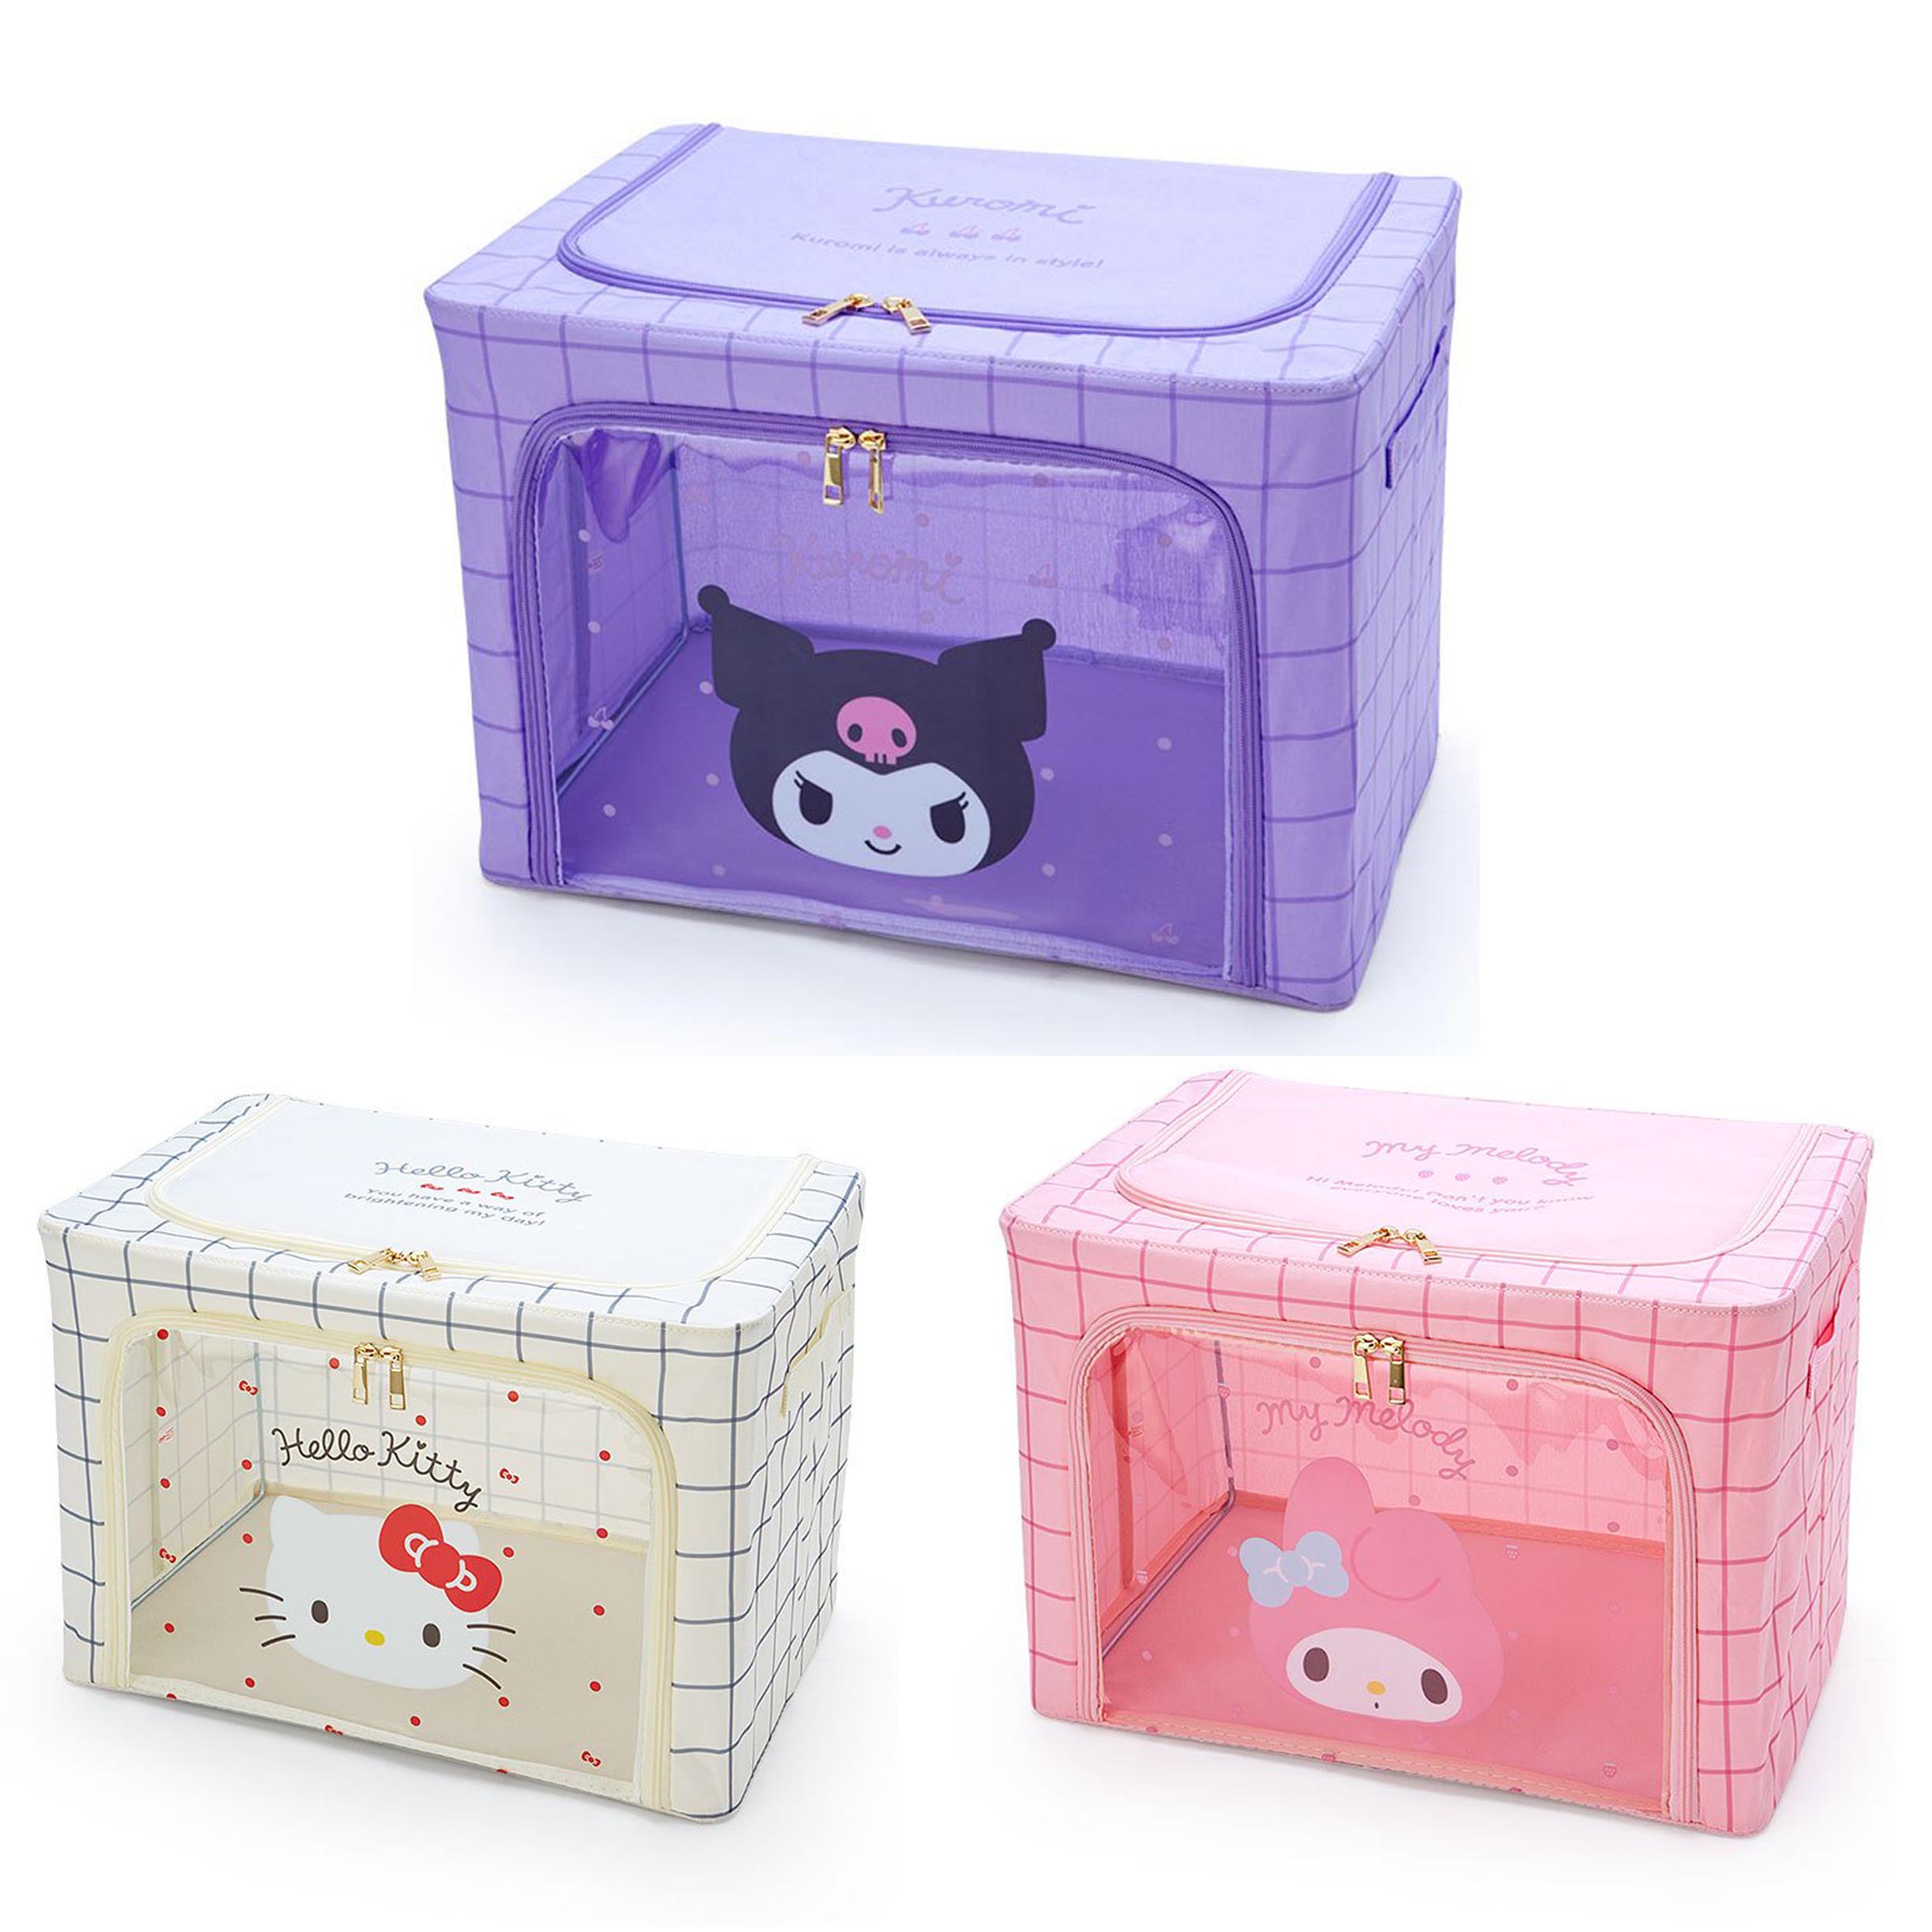 可提式窗式收納箱-凱蒂貓 HELLO KITTY 三麗鷗 Original Sanrio 日本進口正版授權